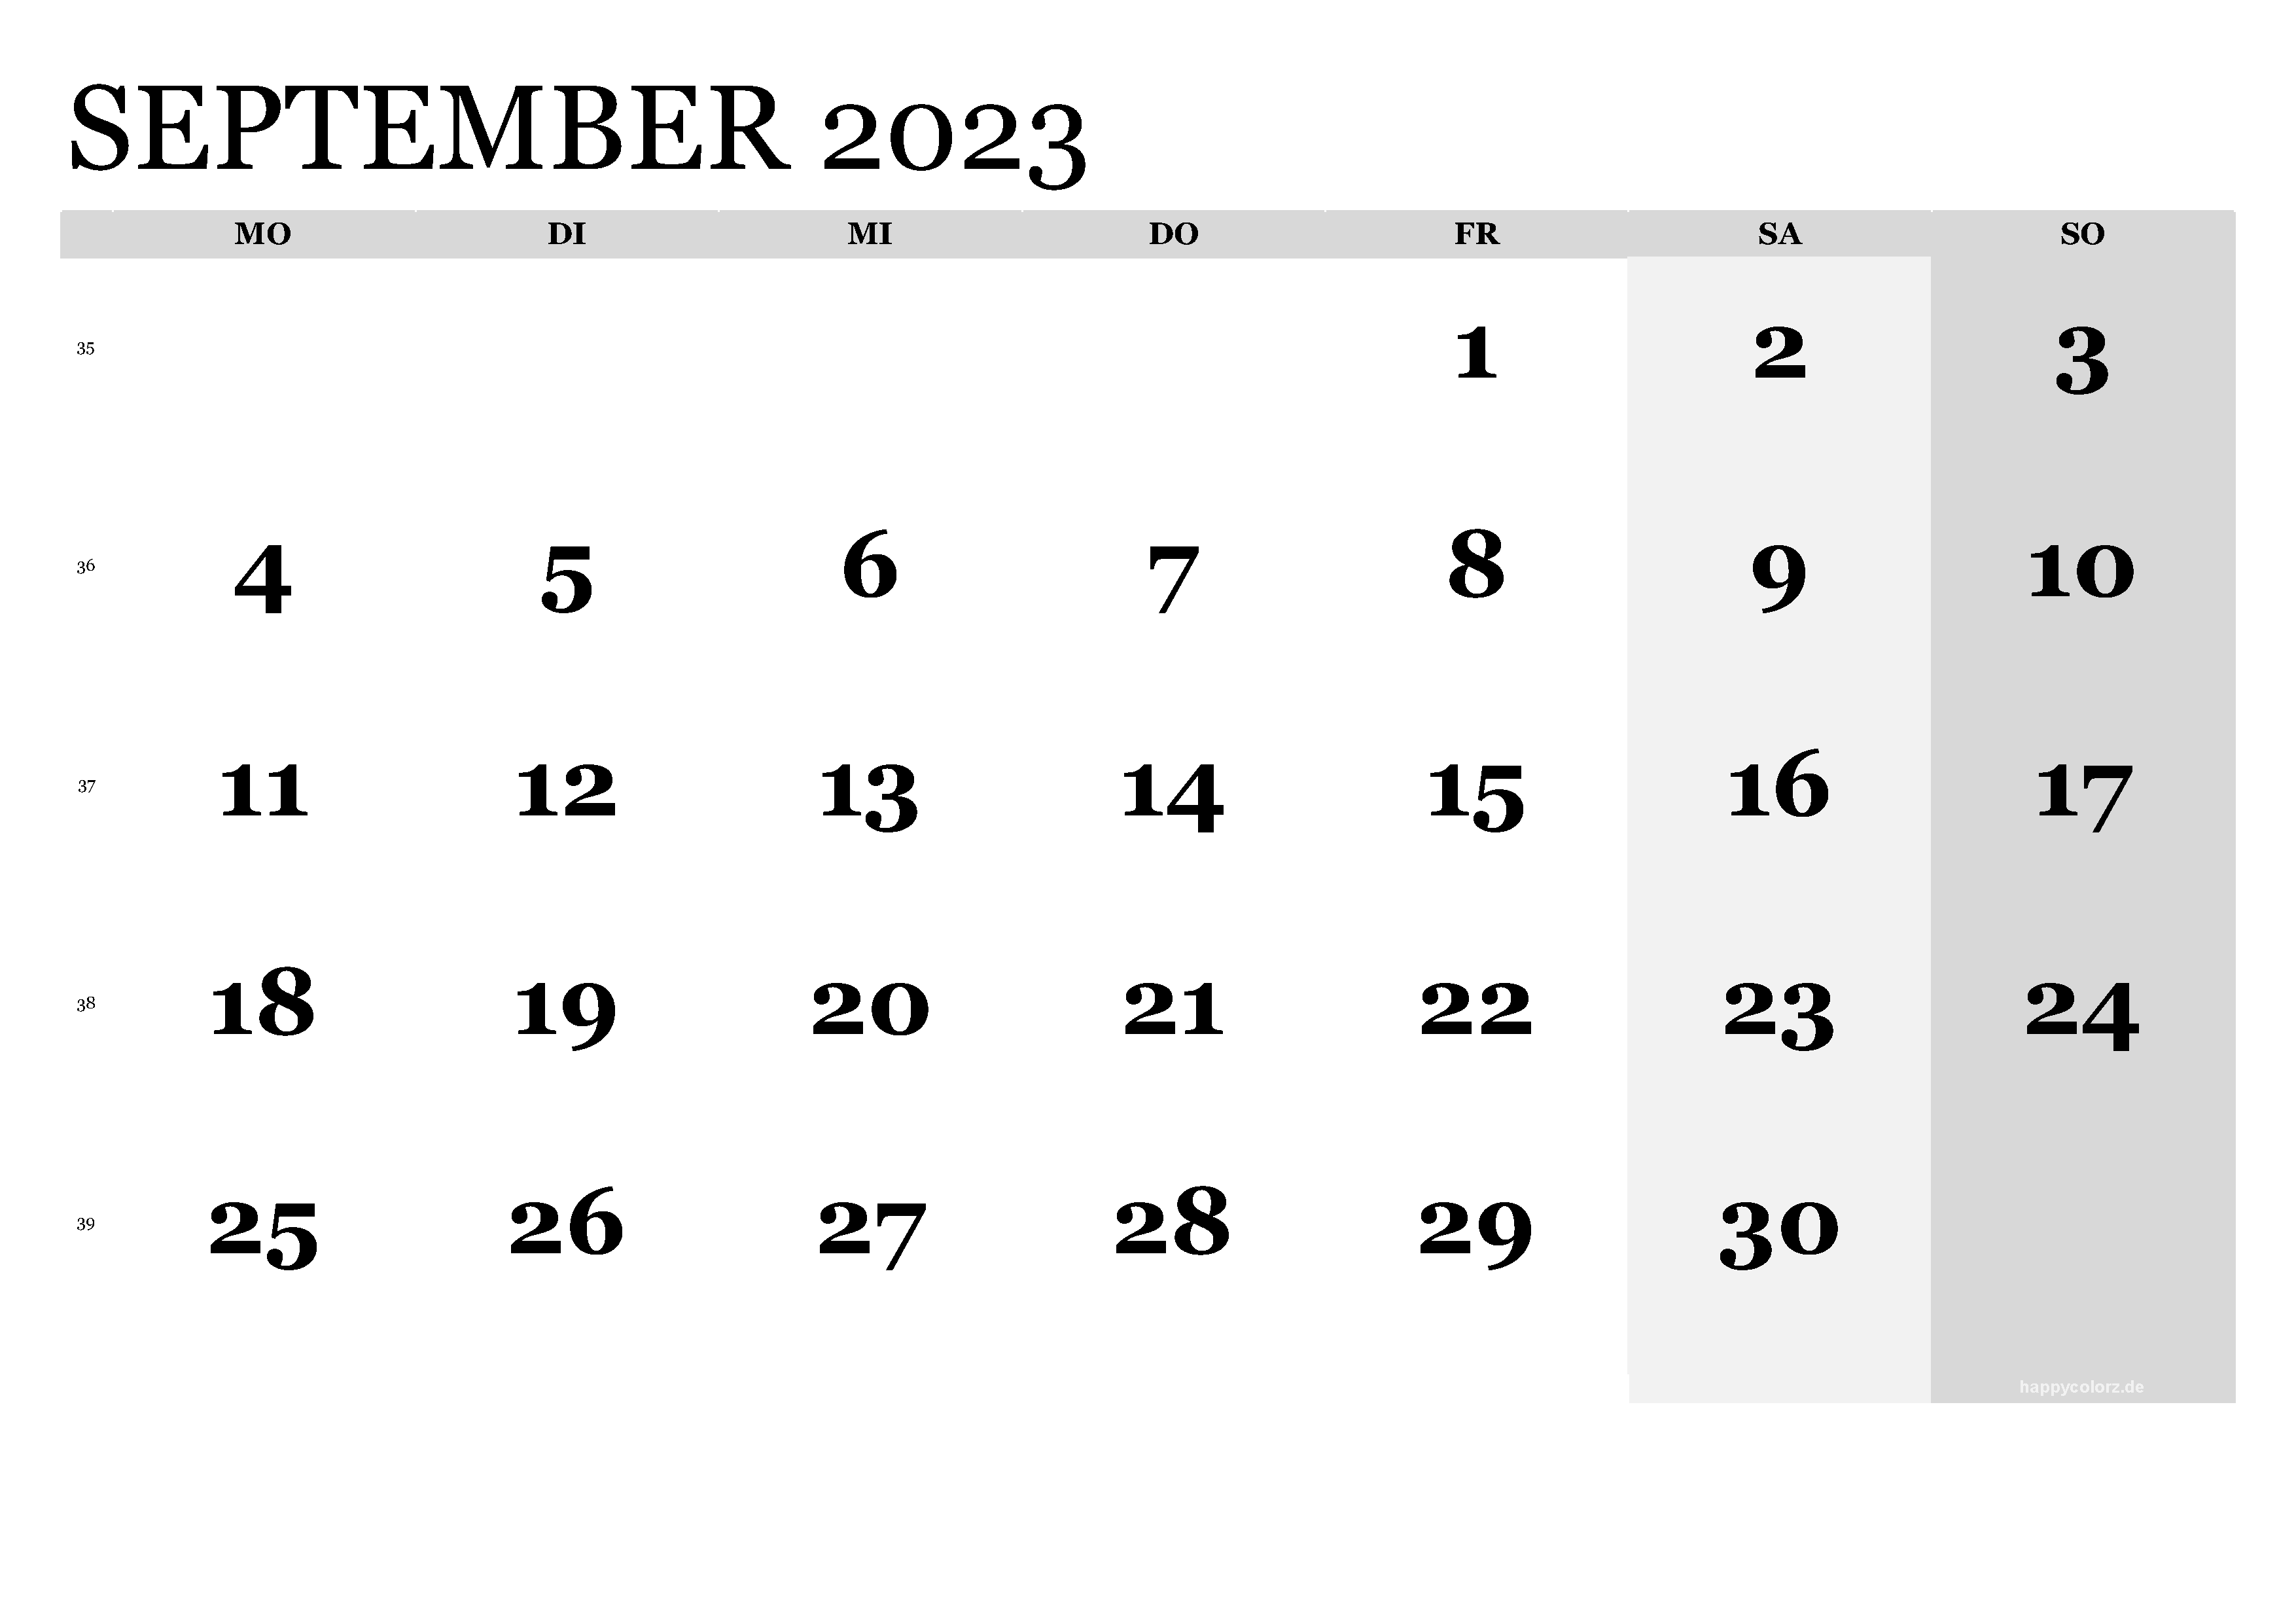 September 2023 Kalender - kostenlos zum Ausdrucken